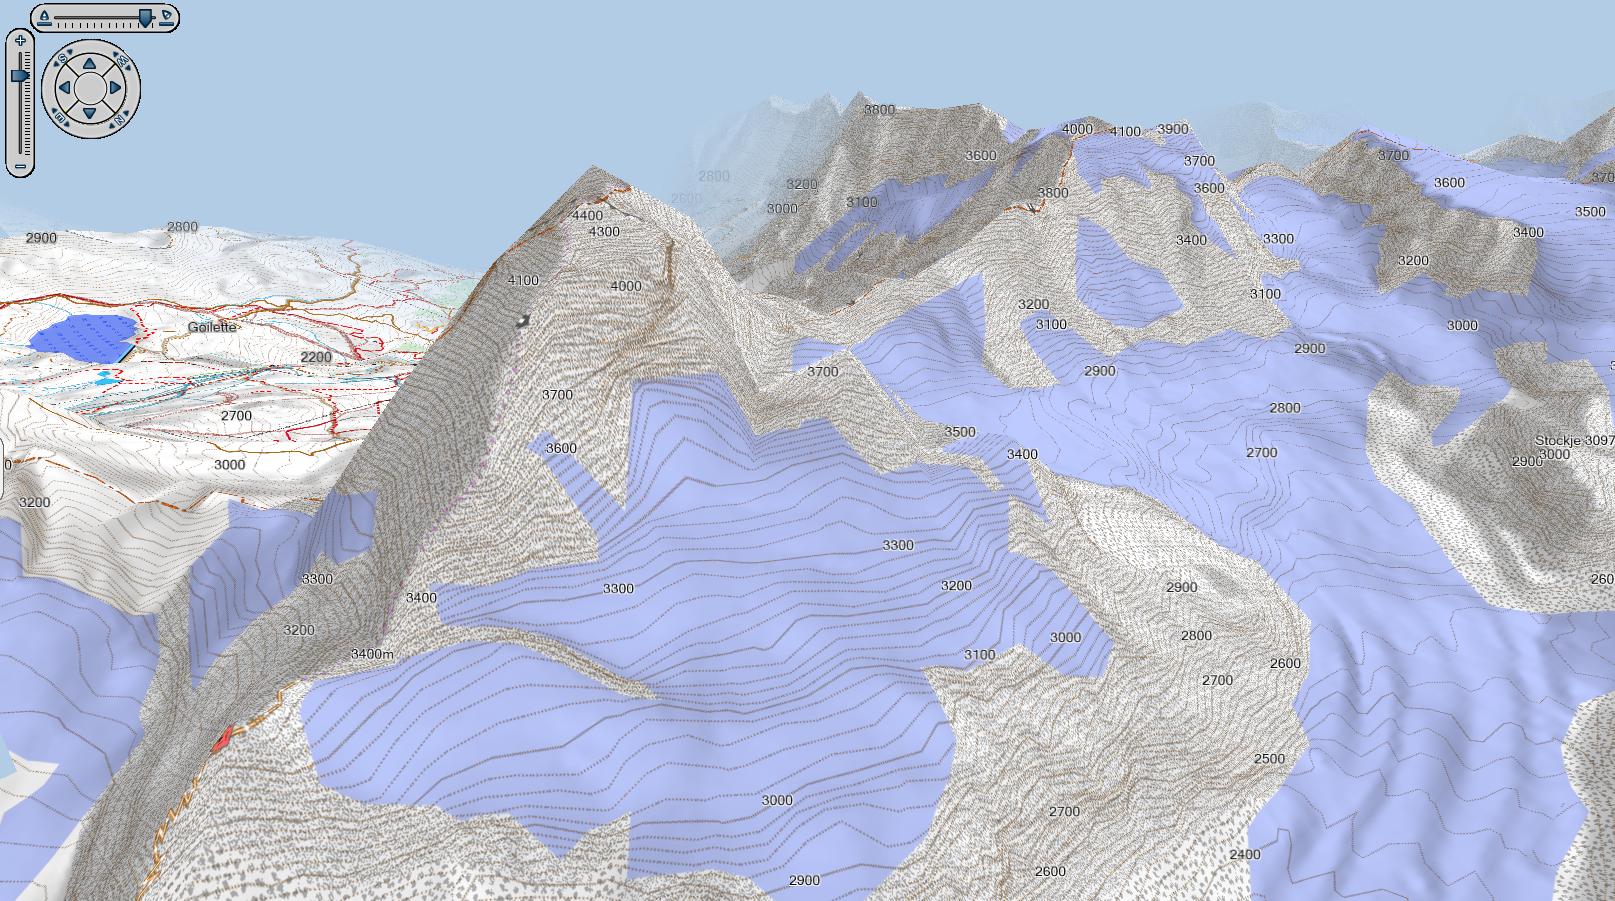 Matterhorn 3D View in Basecamp